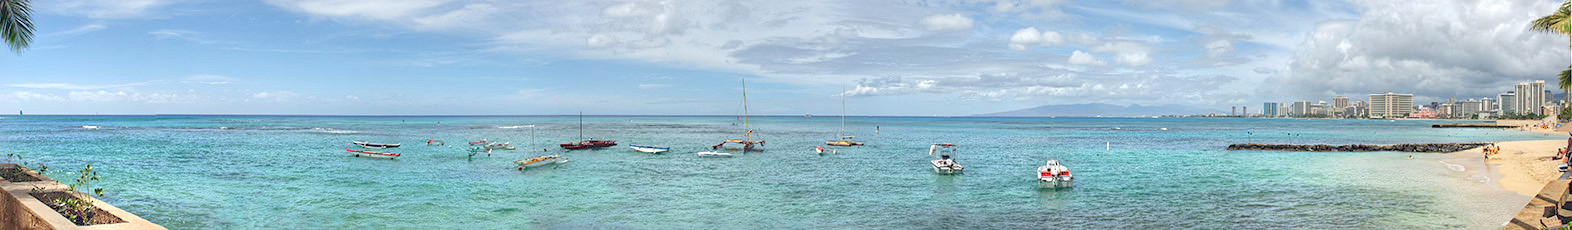 Waikiki Panorama